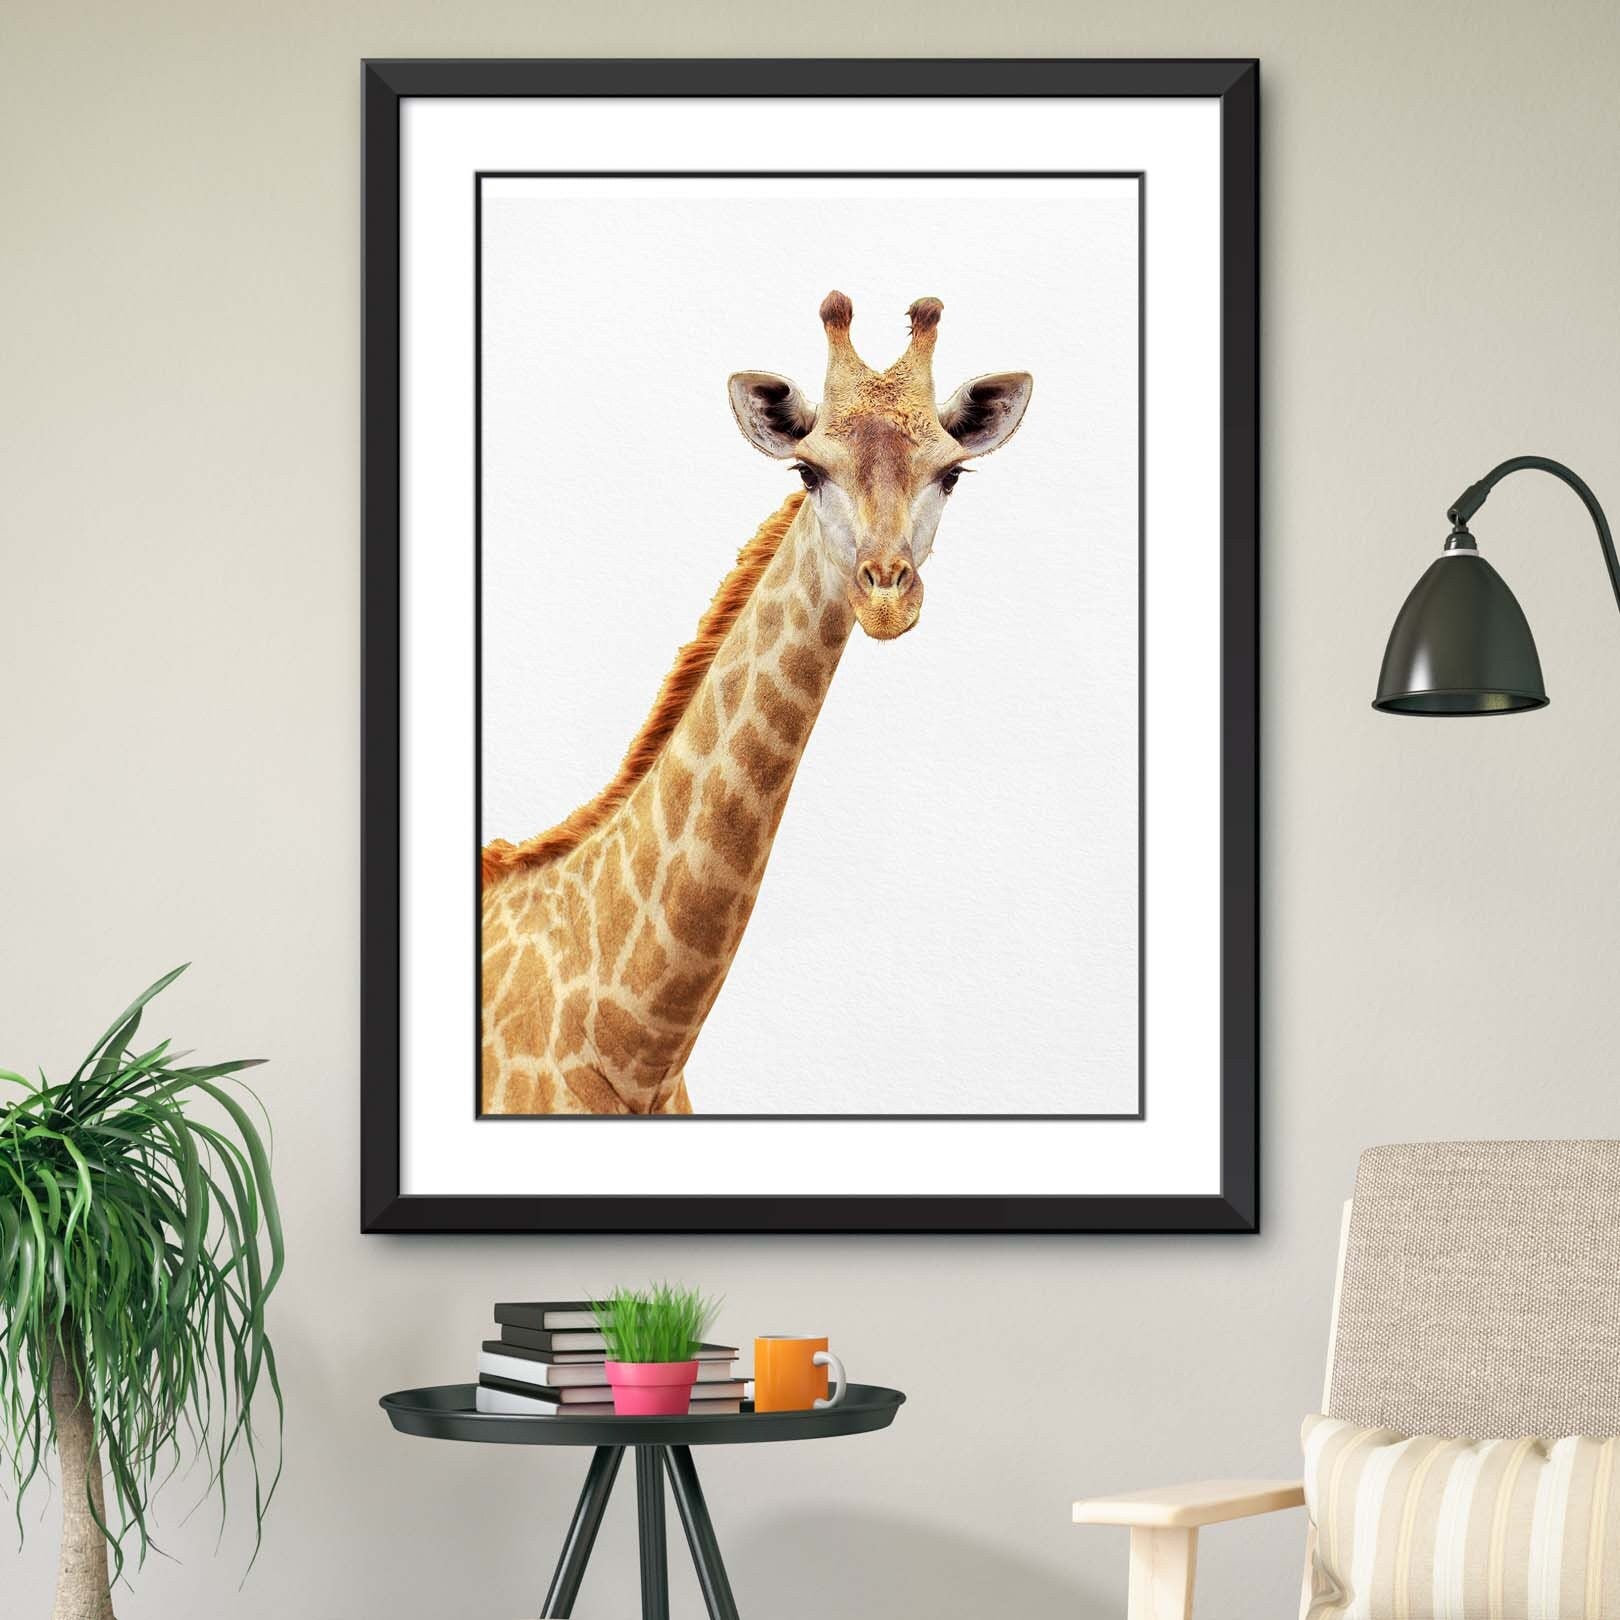 Giraffe Print, Giraffe Wall Art, Giraffe Decor, Living Room Art, Farmhouse Wall Decor, Farmhouse Art, Giraffe Wall Decor,